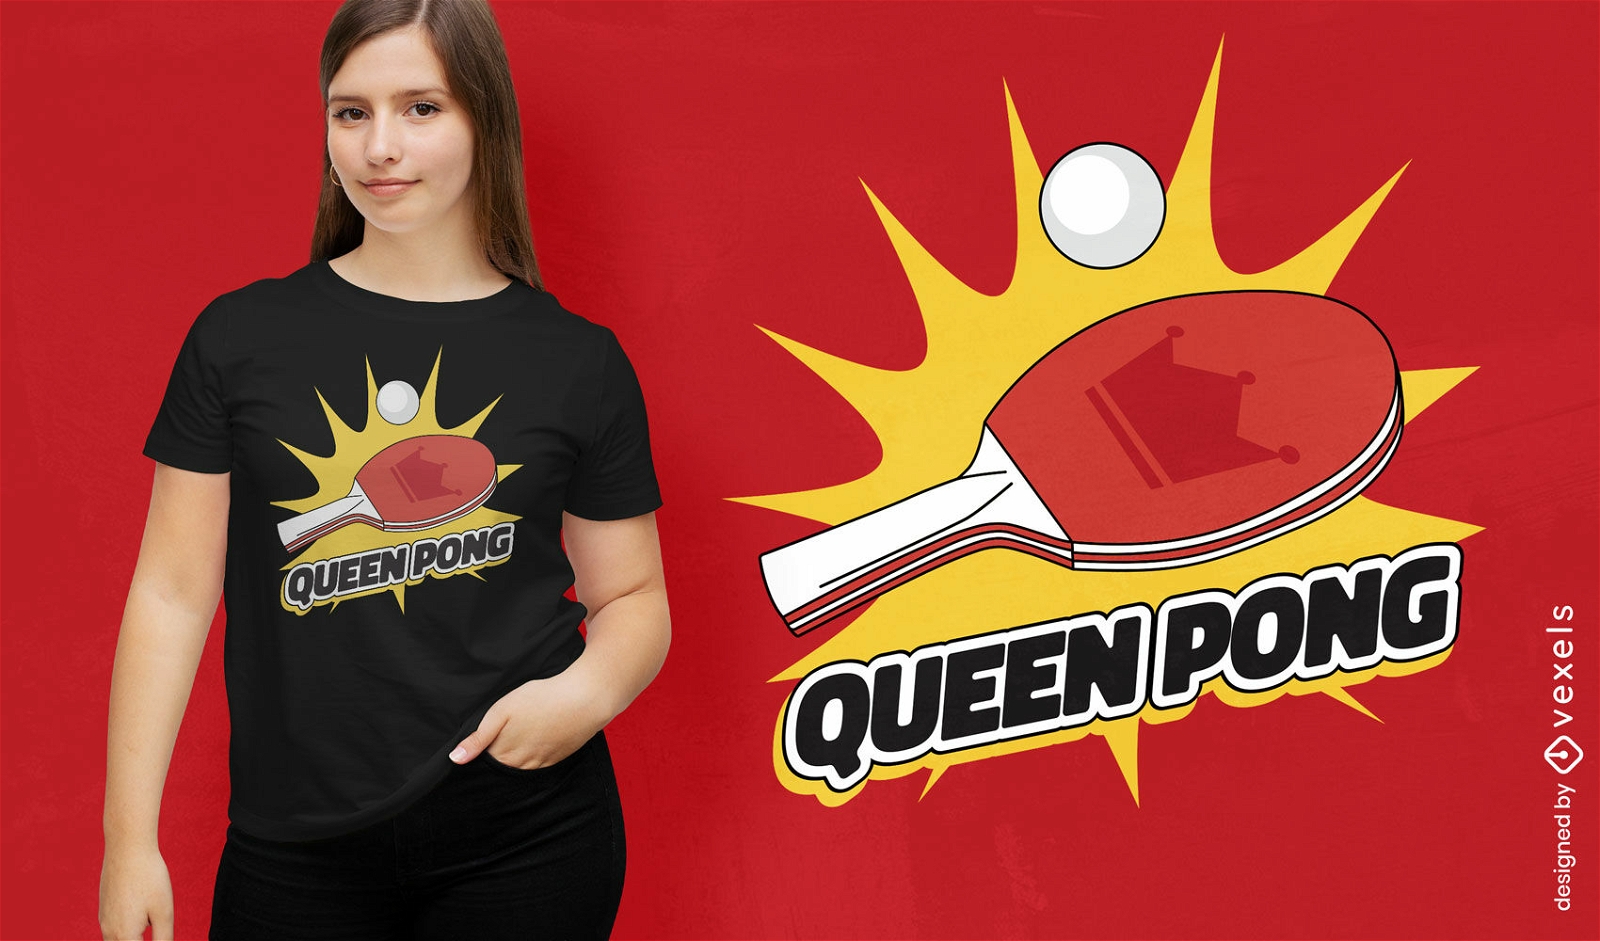 Dise?o de camiseta de reina de ping pong.